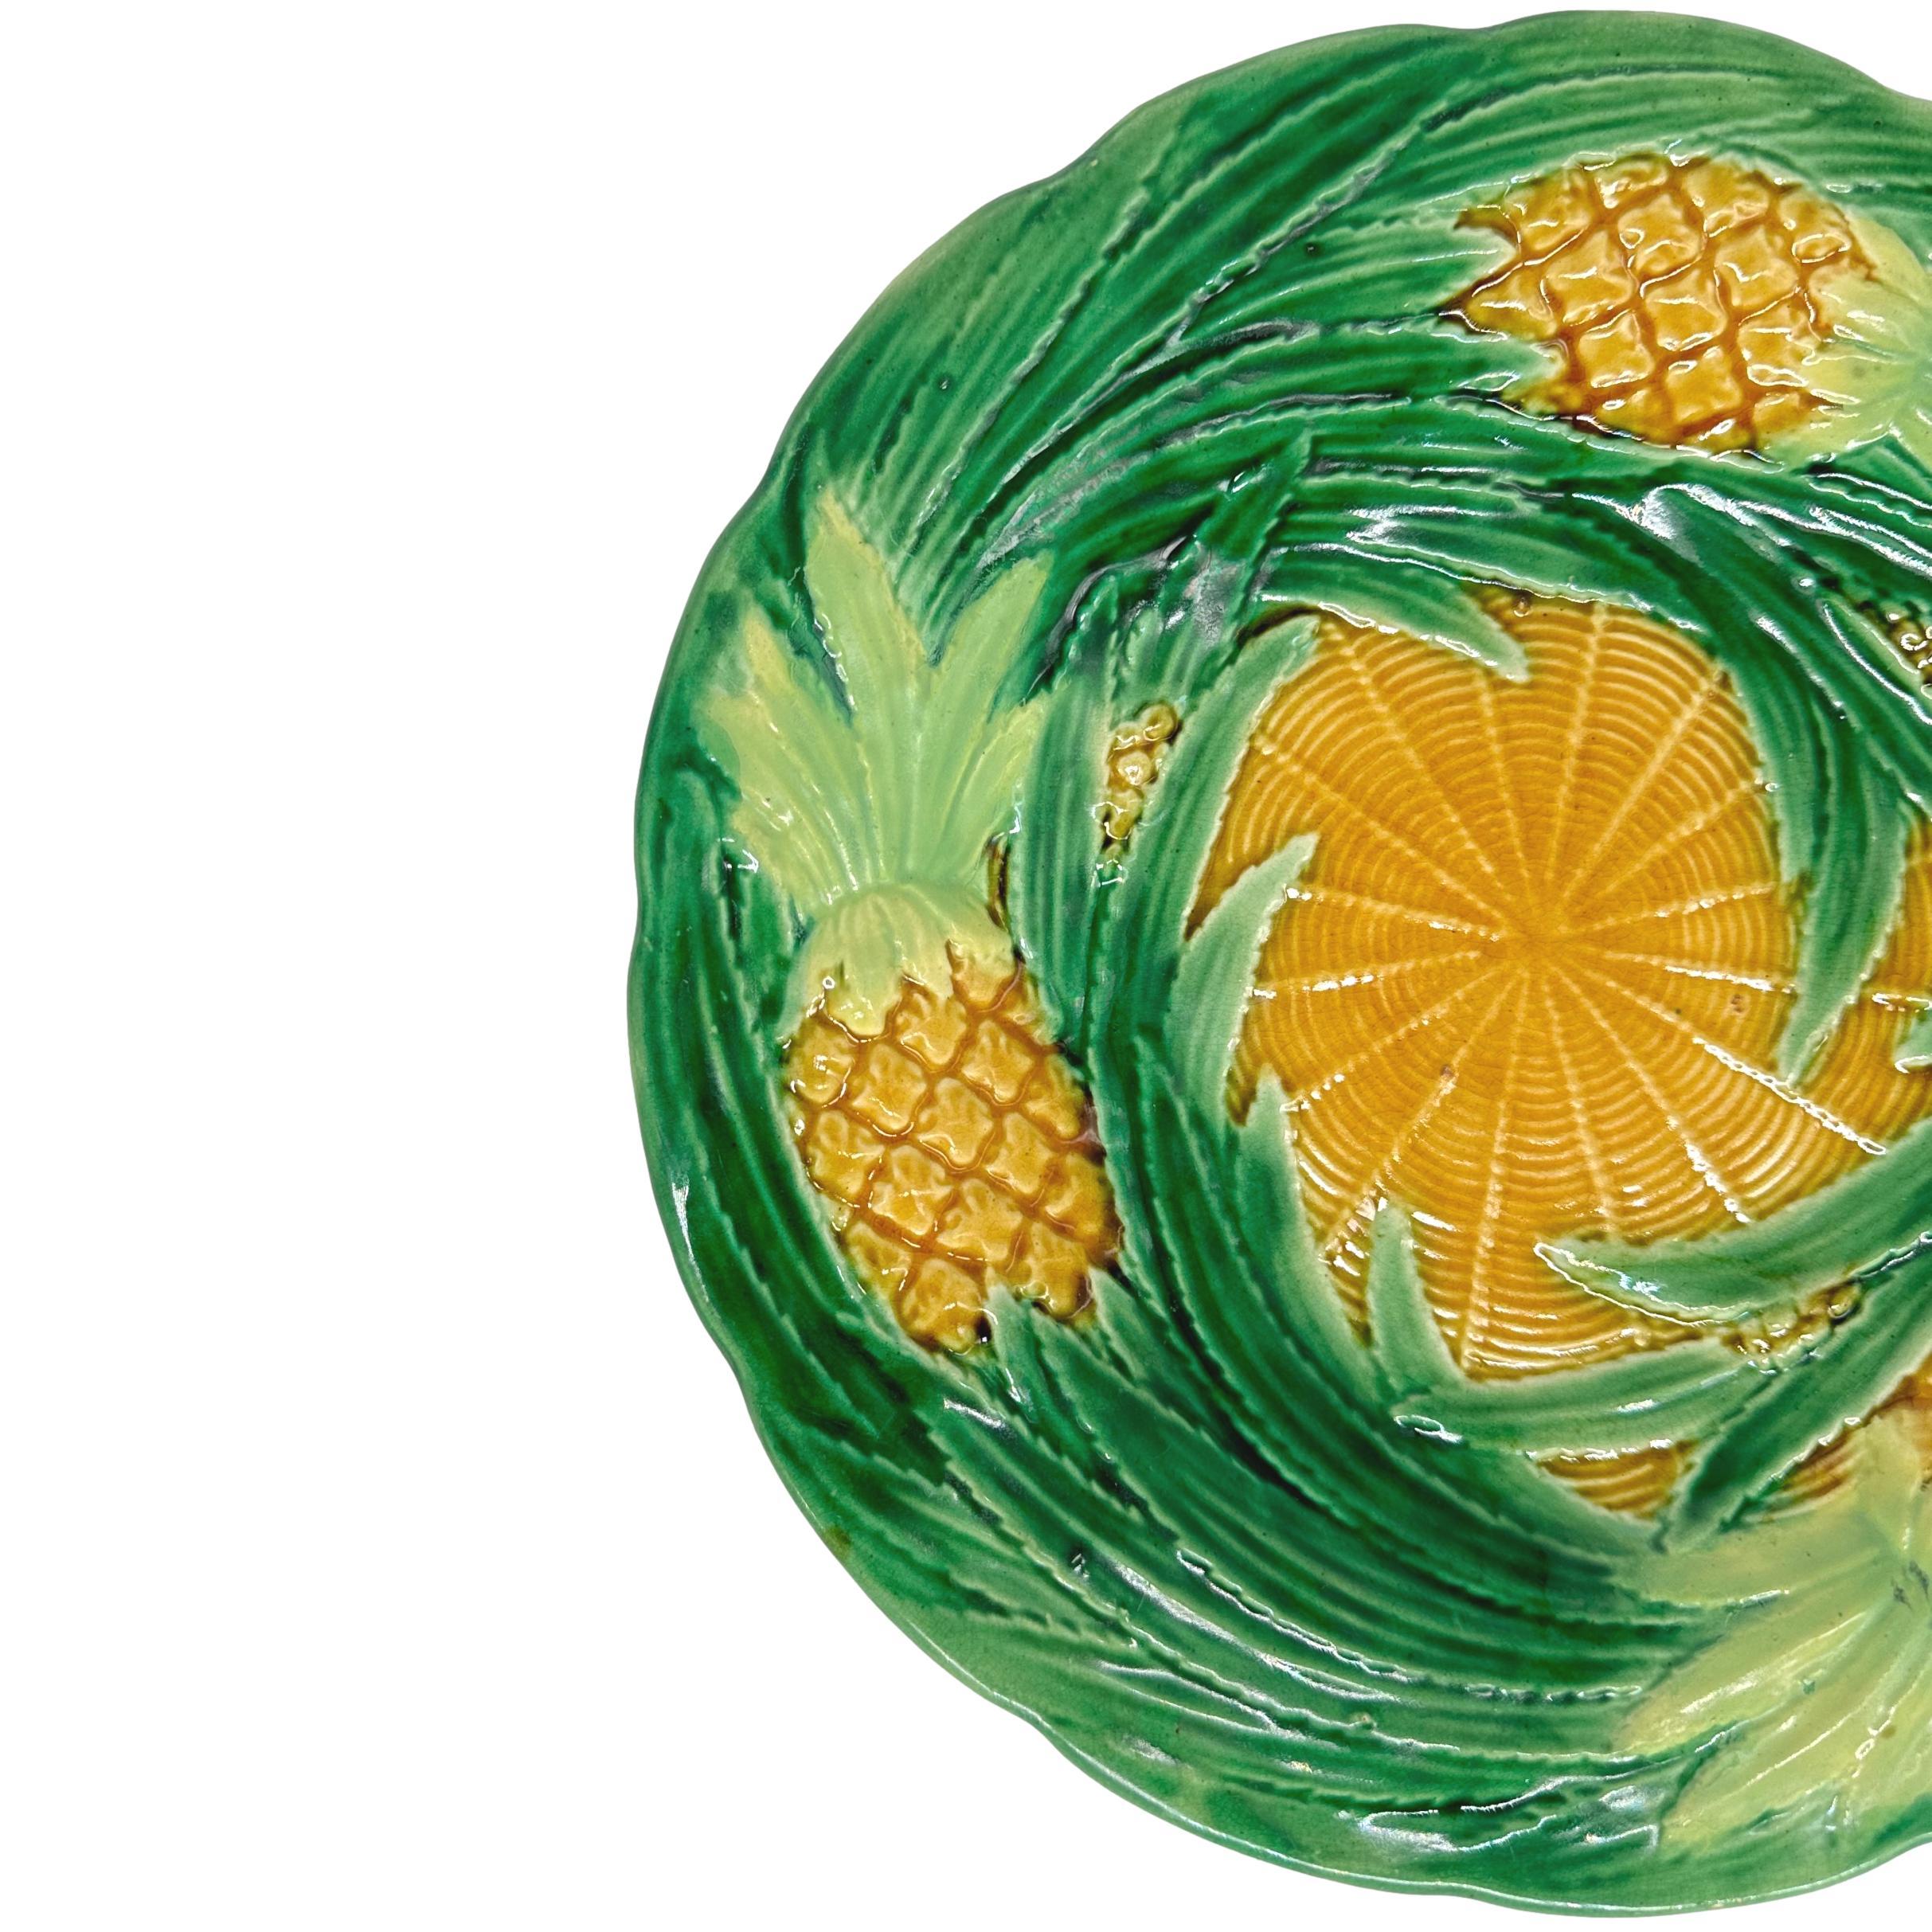 Assiette à dessert en majolique de George Jones, avec des ananas moulés en relief et des feuilles tourbillonnantes émaillées en vert, le centre avec une simulation de vannerie émaillée ocre jaune, le revers avec des marbrures typiques d'écaille de